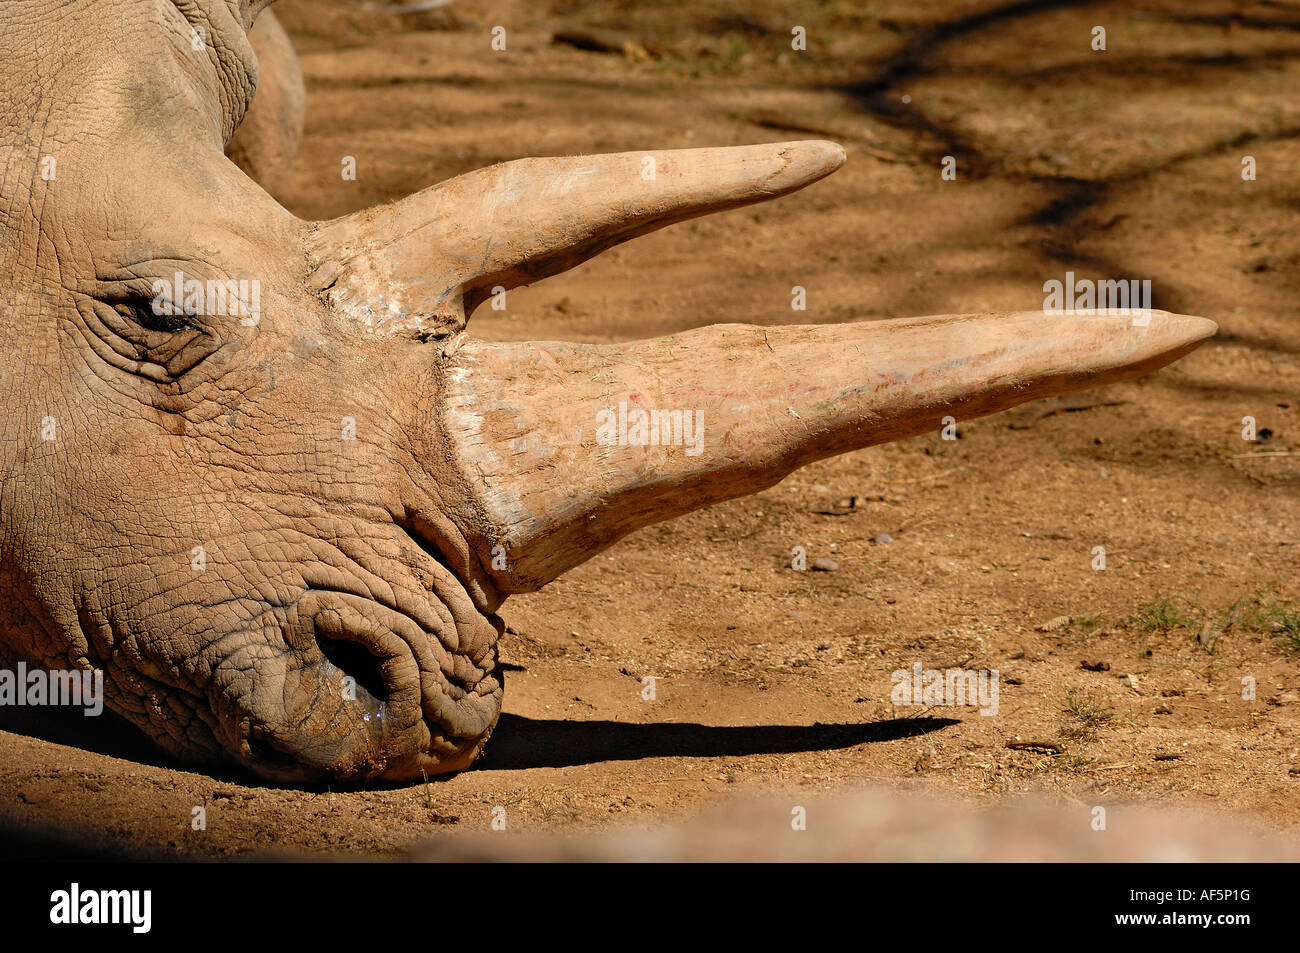 Portrait d'un rhinocéros blanc. Ceratotherium simum Banque D'Images